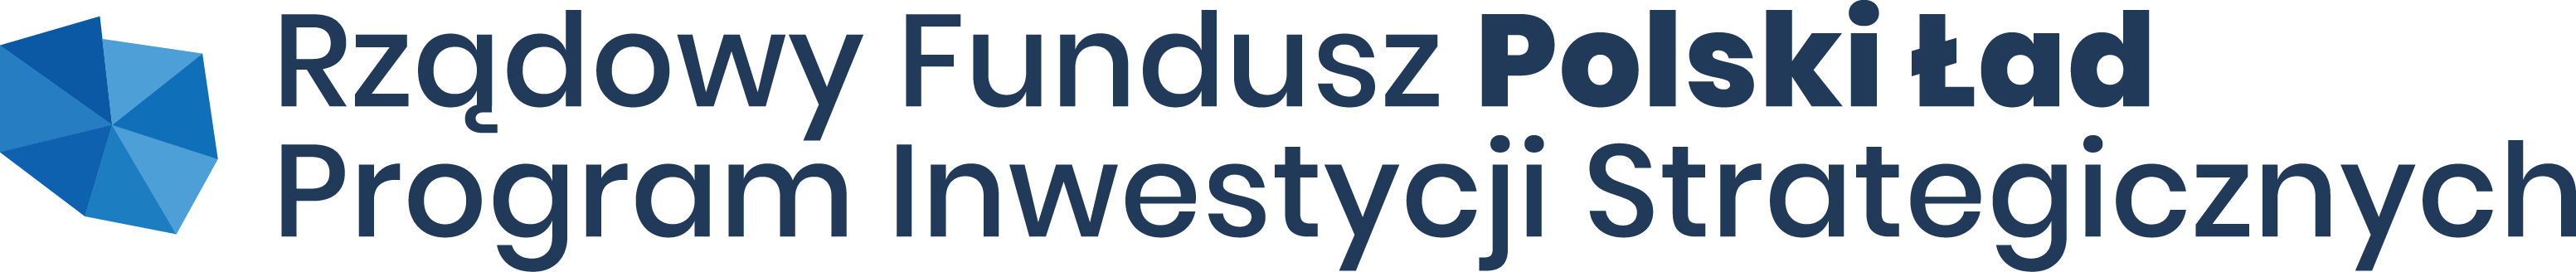 Logo Rządowego Funduszu Polski Ład Program Inwestycji Strategicznych